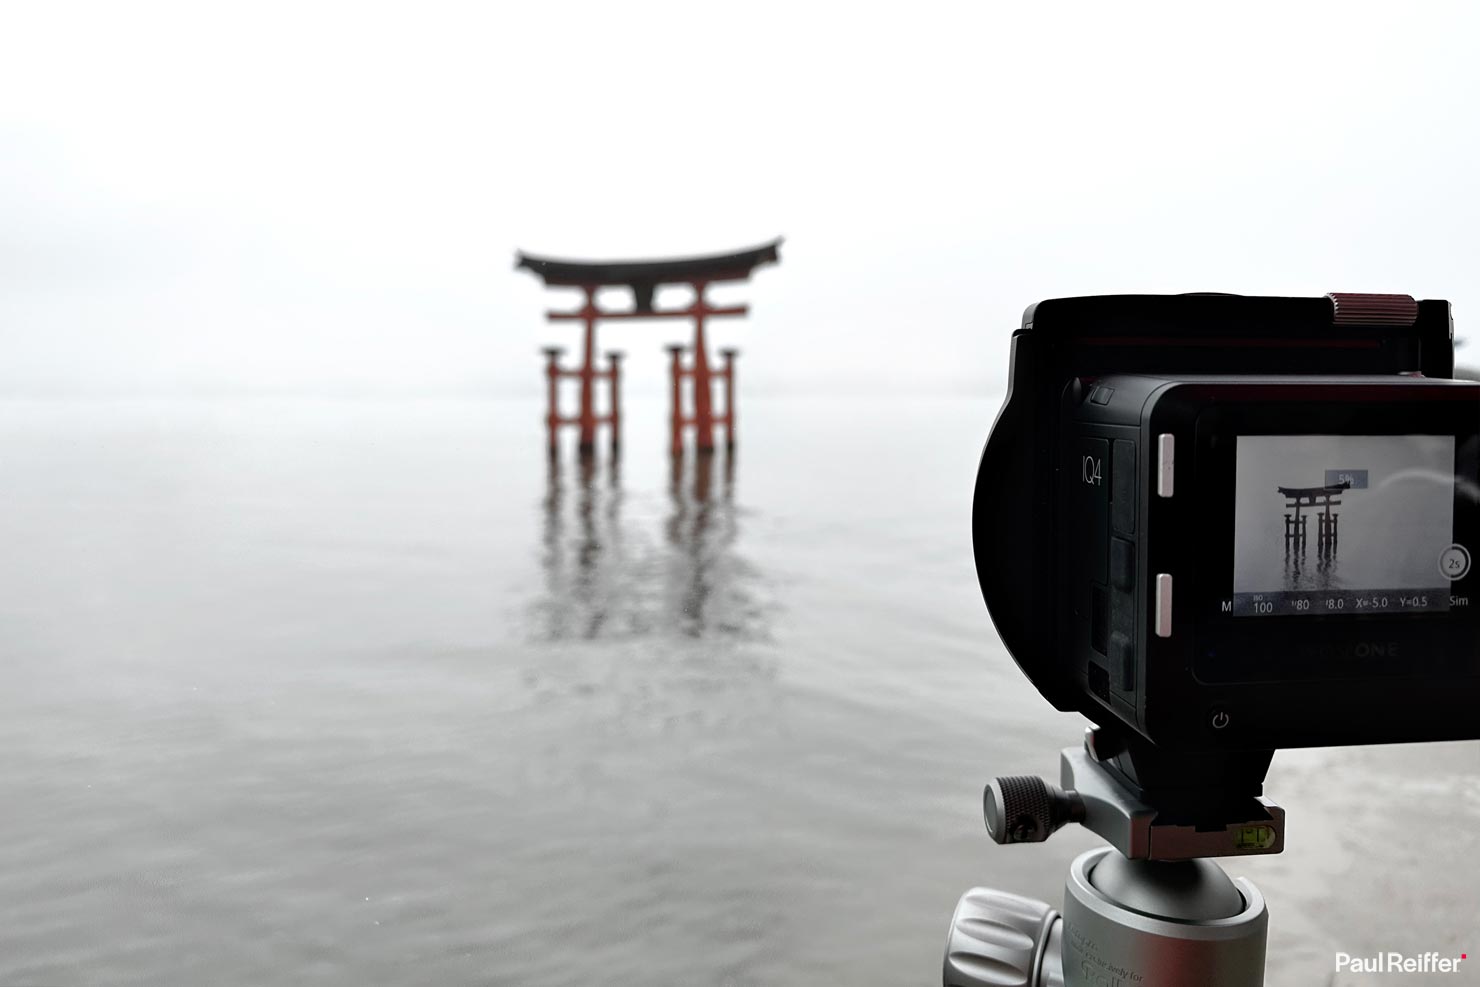 BTS Behind Scenes Camera Hiroshima Miyajima Island Japan Itsukushima Torii Floating Gate Landscape Photography Paul Reiffer Phase One Fine Art Print Japan